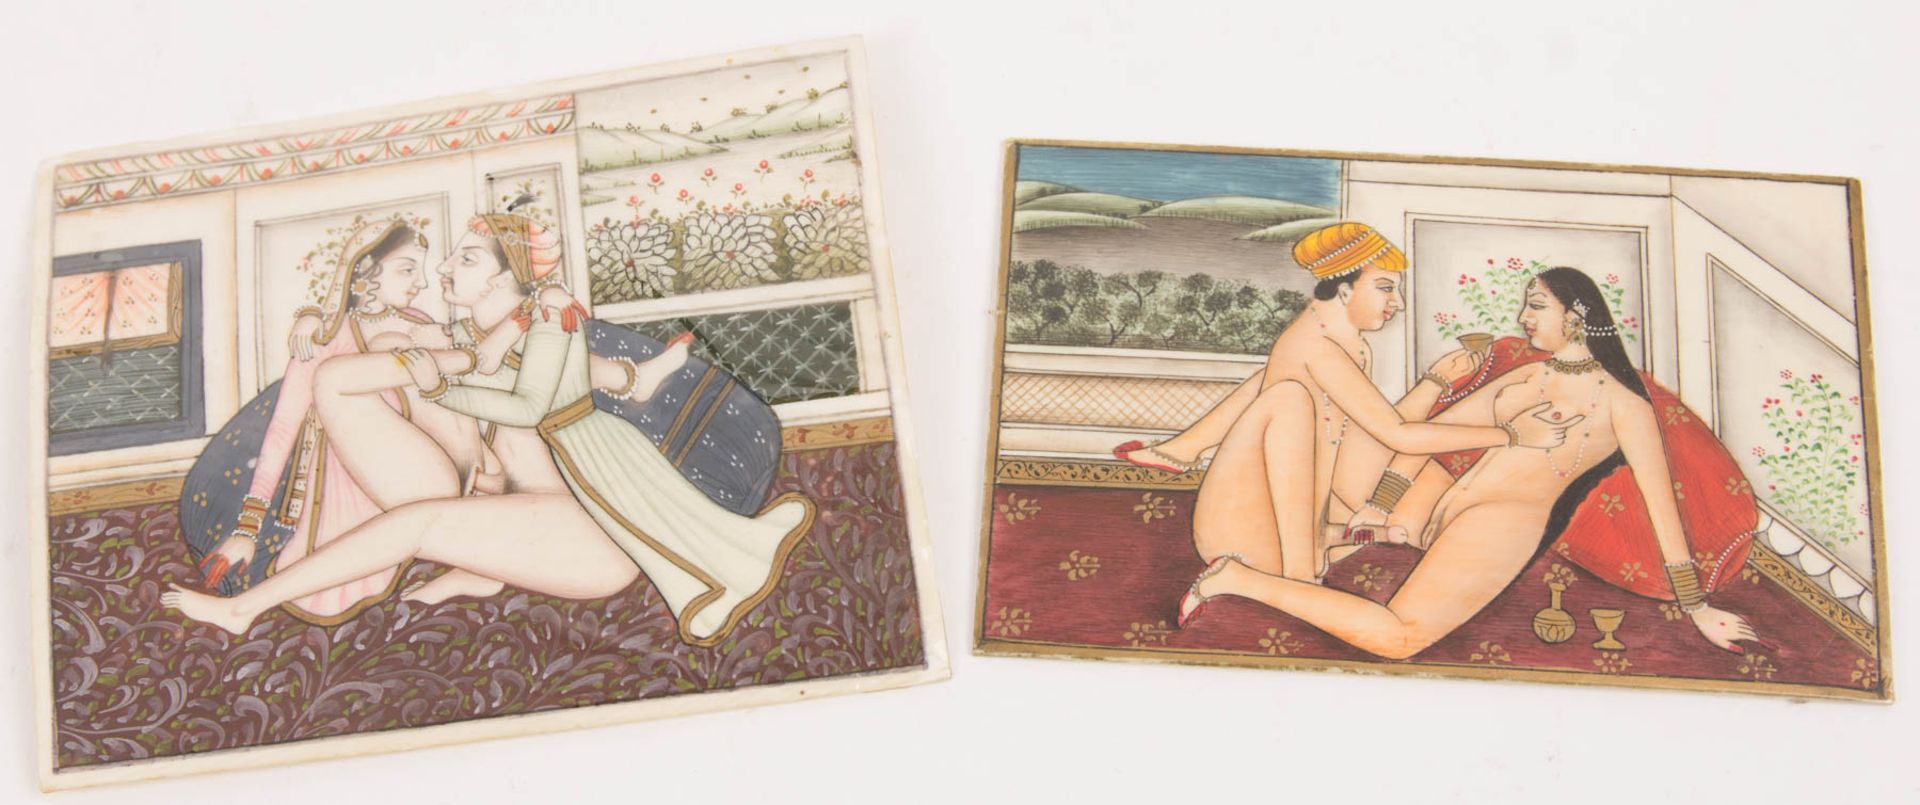 Zwei erotische Miniaturen, Tempera auf Elfenbein, Indien, 19. / 20. Jh.